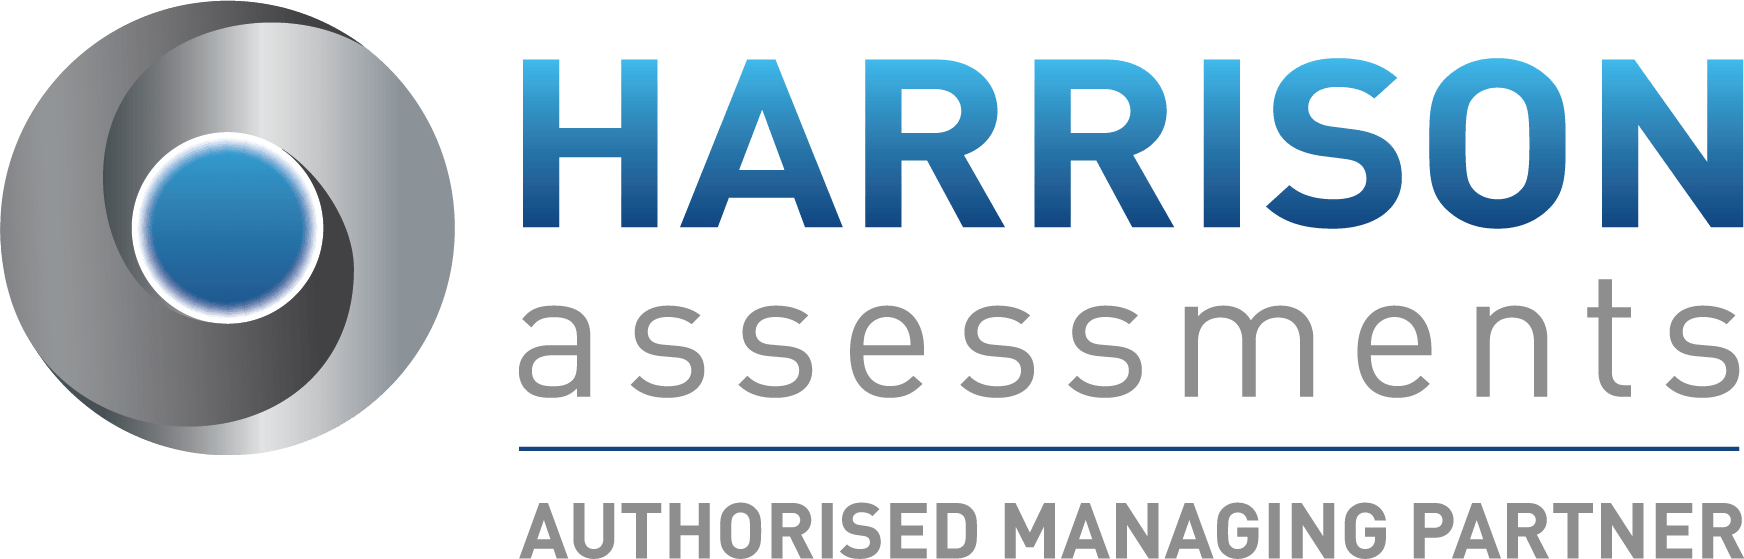 HA Authorised Managing Partner logo_UK